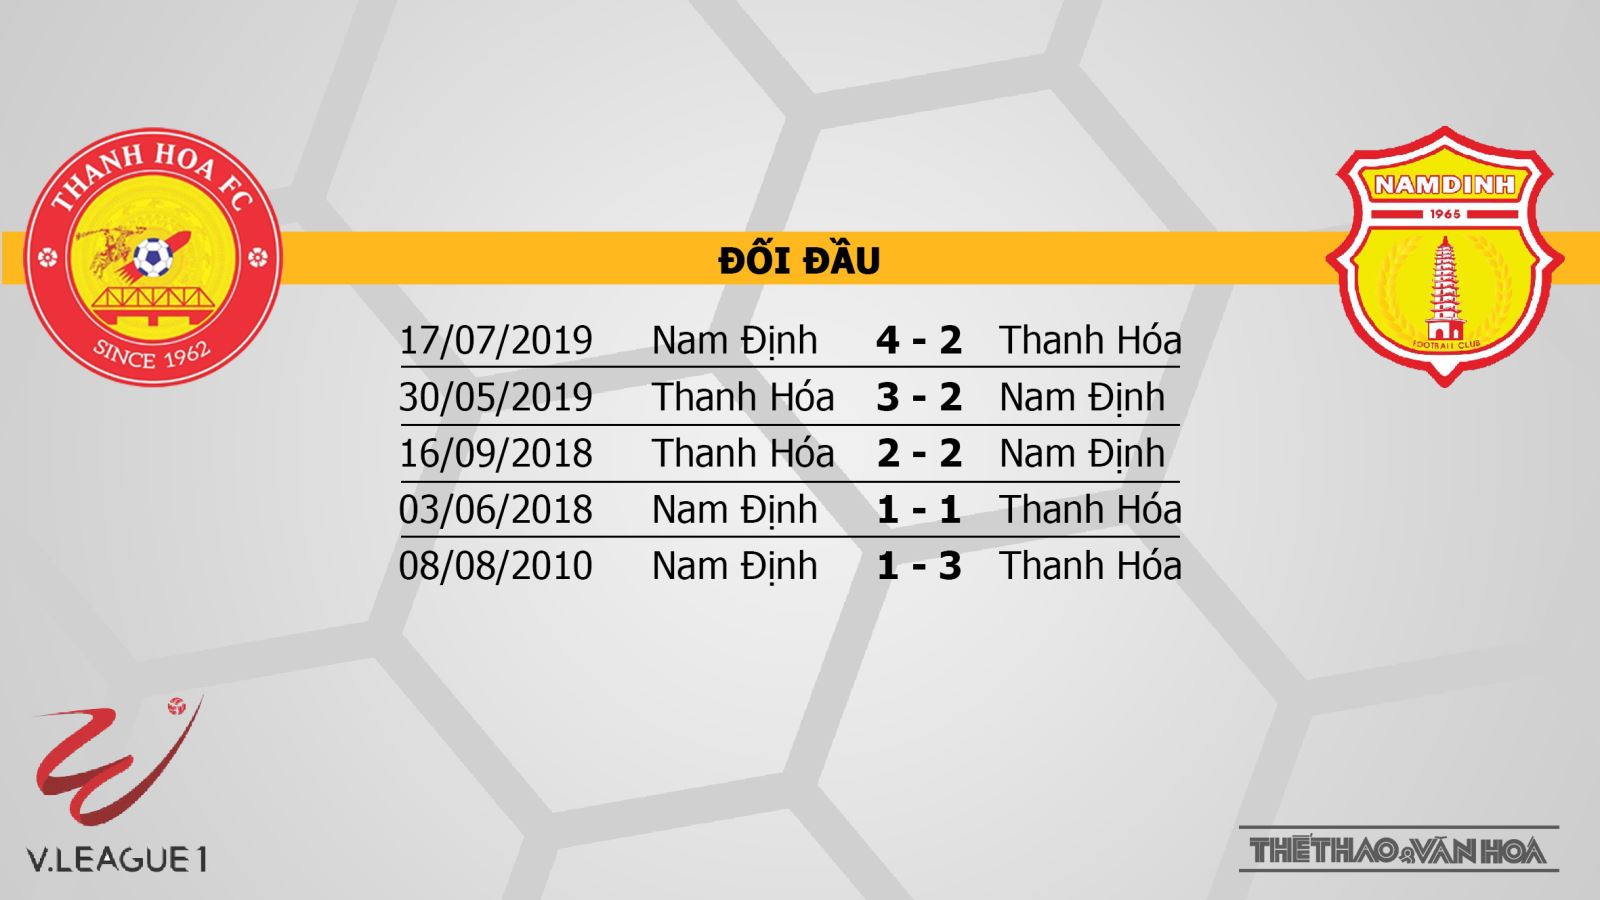 Thanh Hóa vs Nam Định, Thanh Hoá, Nam Định, nhận định bóng đá bóng đá, kèo bóng đá, bóng đá, trực tiếp bóng đá, trực tiếp Thanh Hóa vs Nam Định